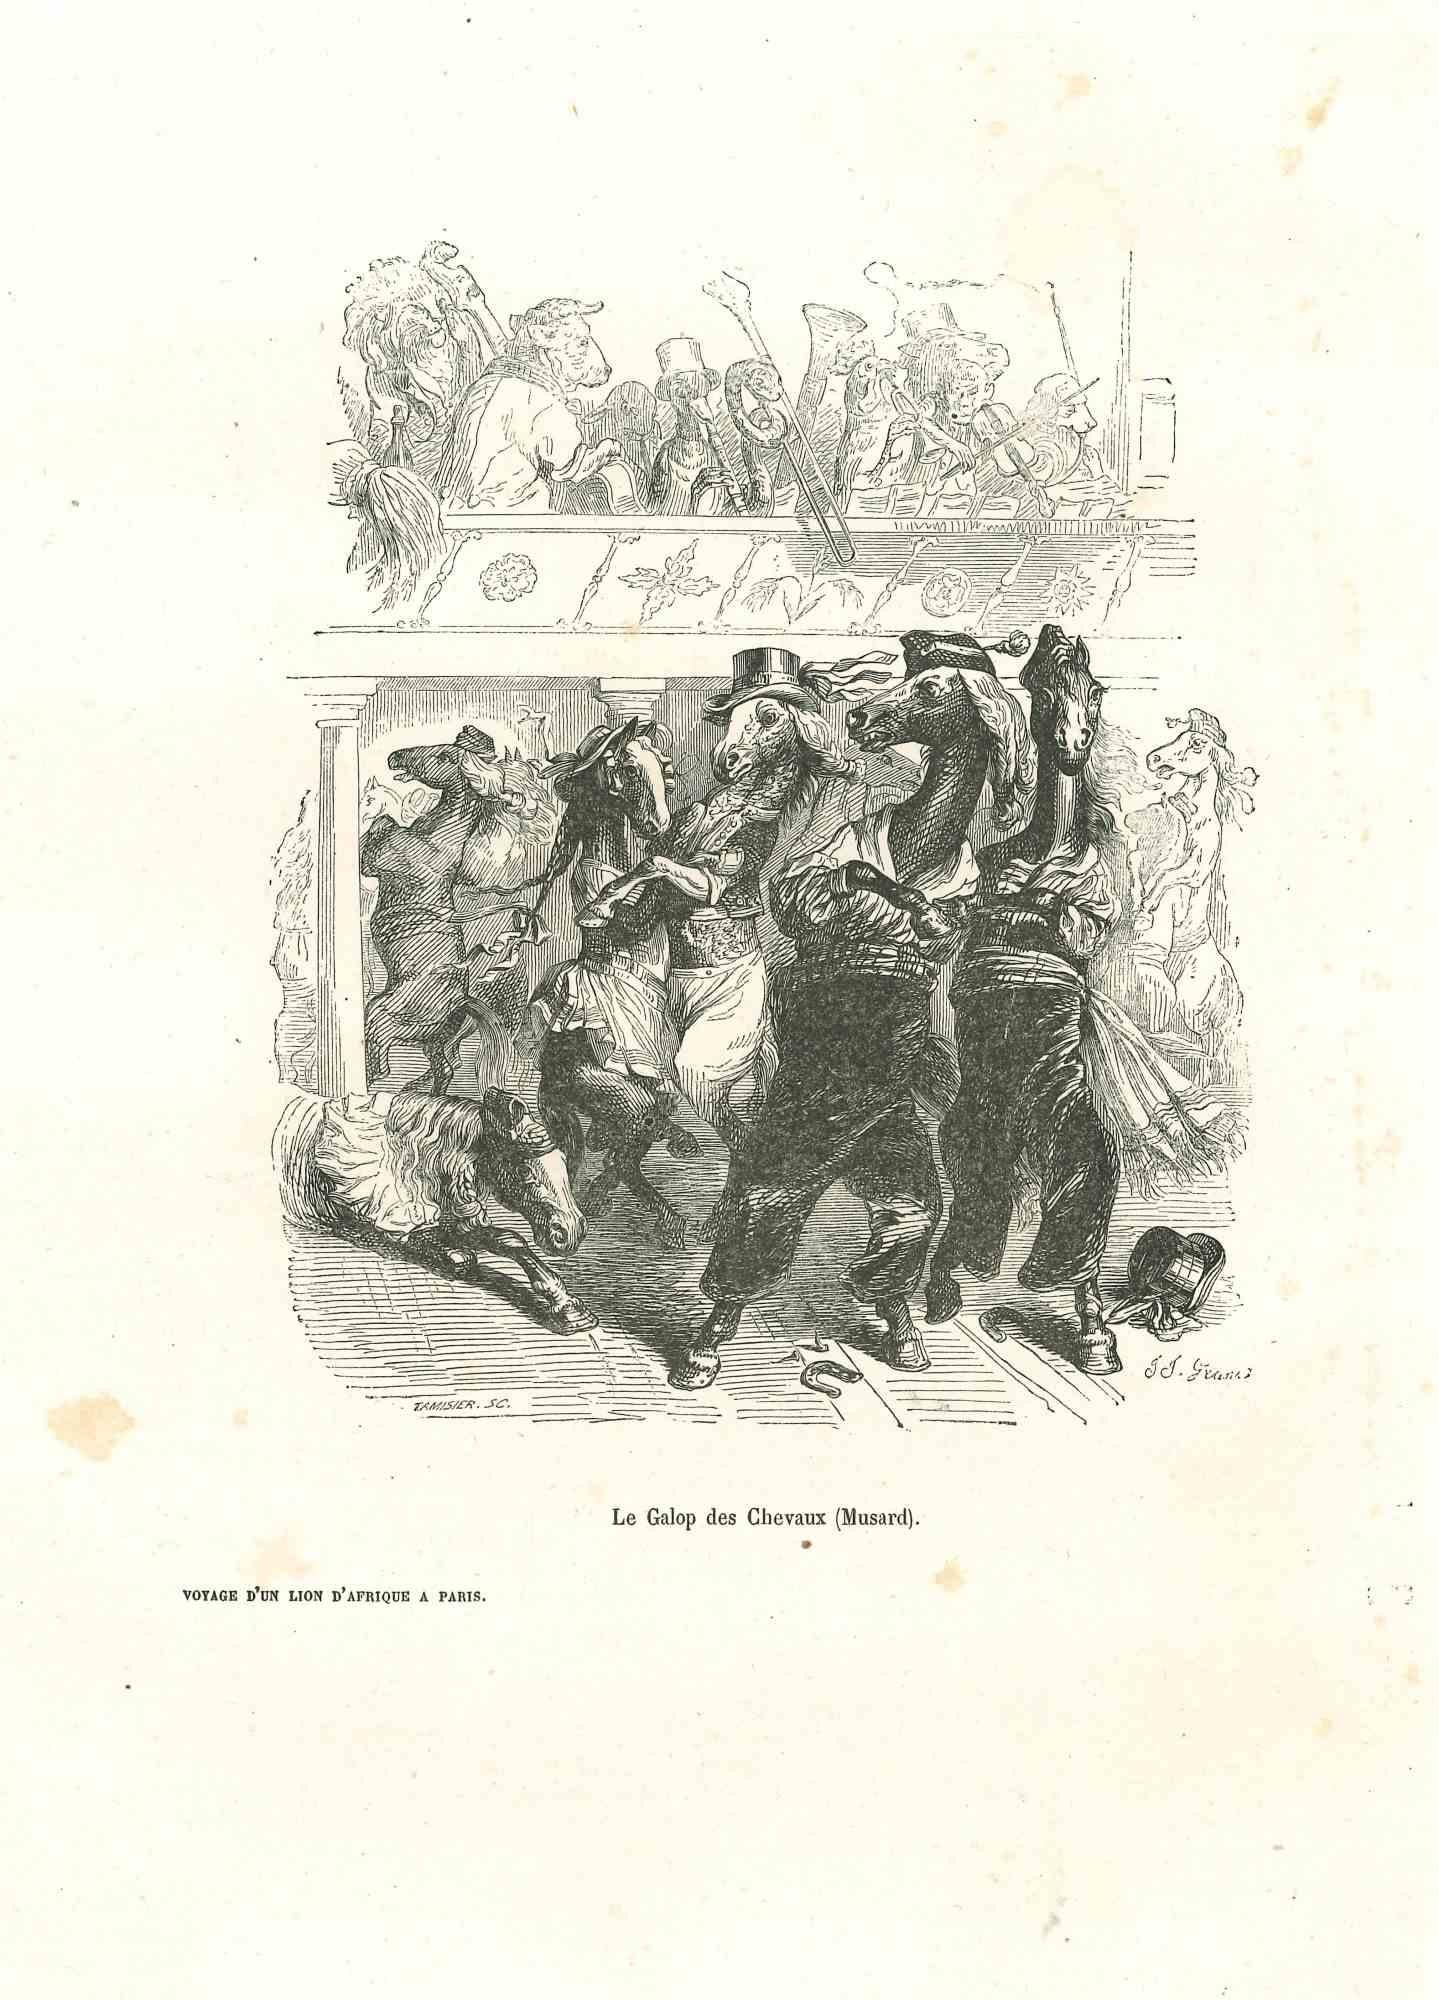 Animal Print Jean Jeacques Grandville - Les chevaux dansant dans un concert - Lithographie originale de J.J Grandville - 1852